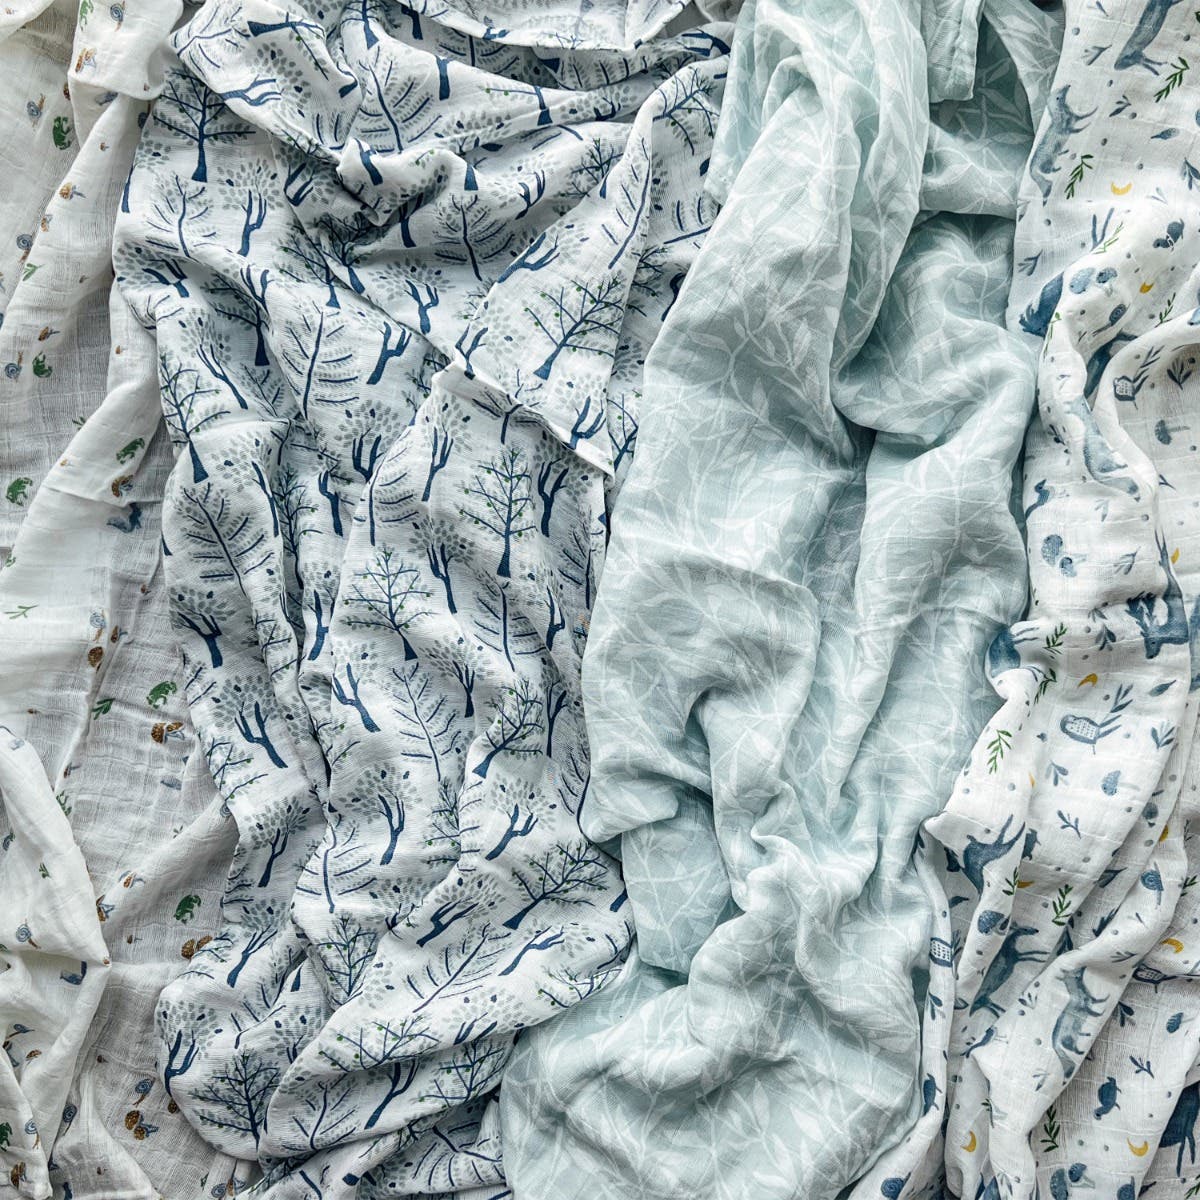 Unsere Pucktücher aus Bio-Baumwoll-Musselin stehen für Qualität + Nachhaltigkeit. Diese besonders atmungsaktiven + weichen Bio-Musselin-Pucktücher werden mit jedem Waschgang noch weicher und angenehmer. Dank der zahllosen Anwendungsmöglichkeiten – unter anderem als Spucktuch, Stillschal, Spieldecke, Wickelauflage und Baby-Decke – sind diese vielseitigen Pucktücher ein absolutes Must-have, ohne das sie das Haus nicht mehr verlassen werden möchten.